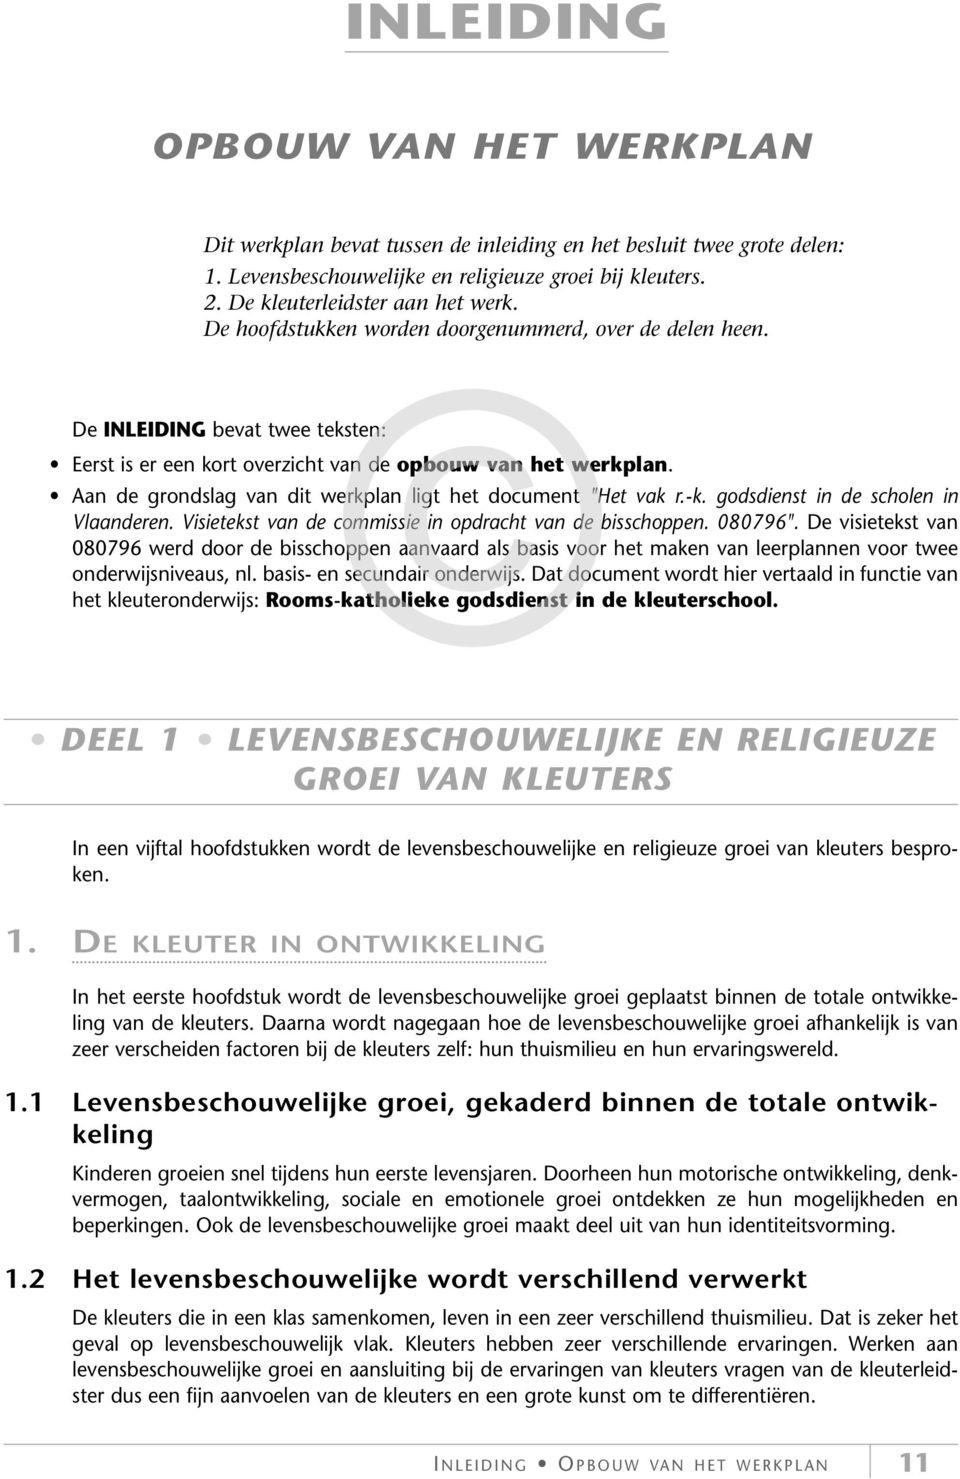 Aan de grondslag van dit werkplan ligt het document "Het vak r.-k. godsdienst in de scholen in Vlaanderen. Visietekst van de commissie in opdracht van de bisschoppen. 080796".